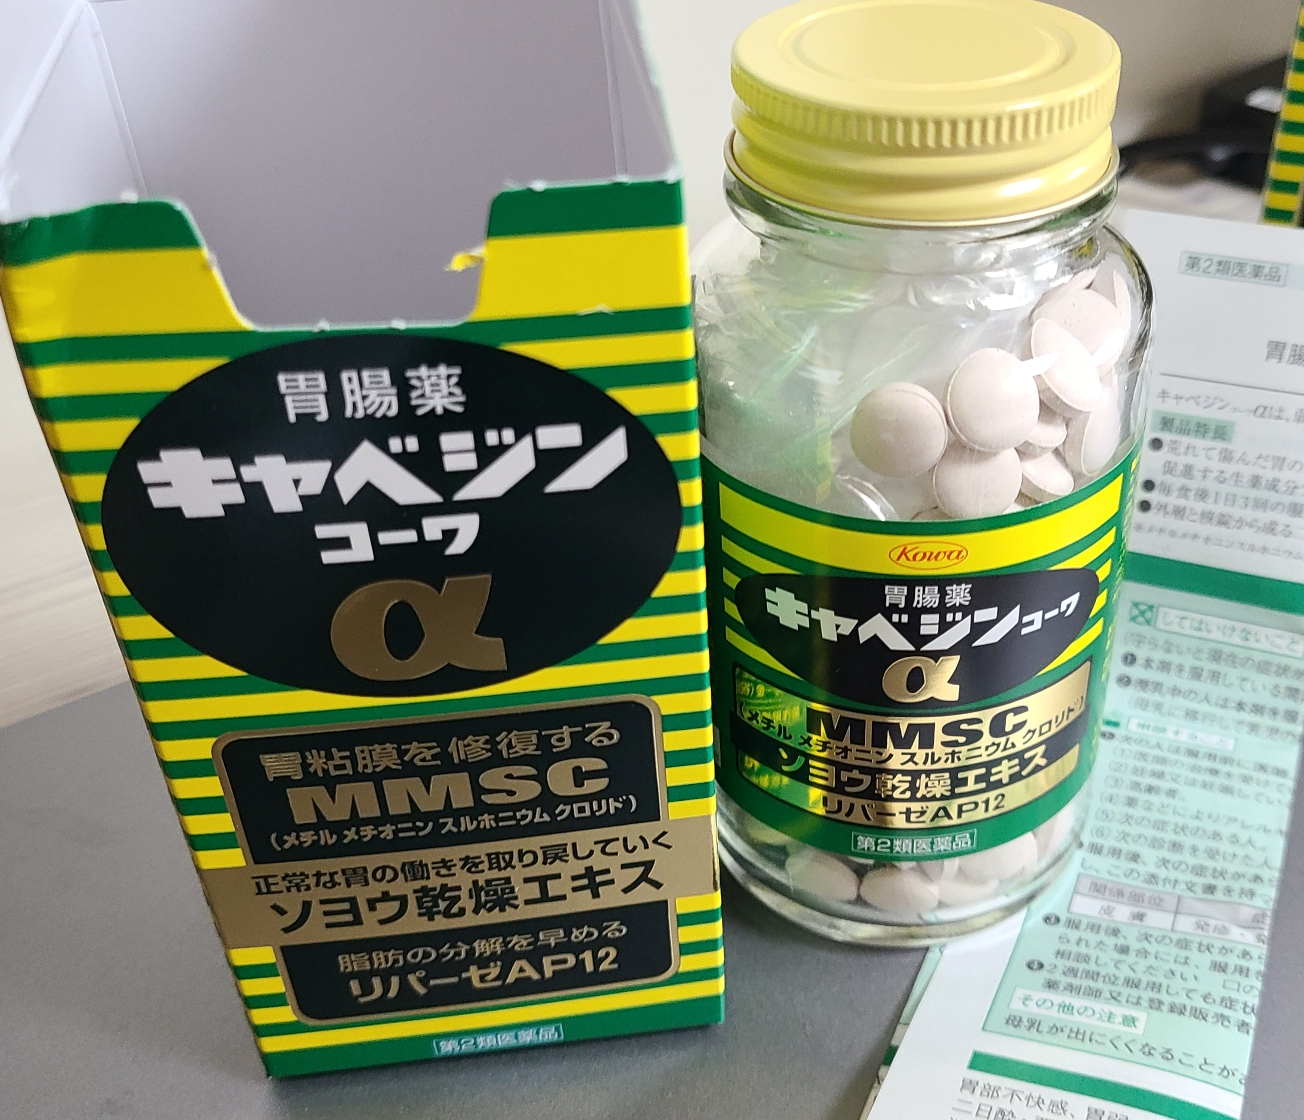 카베진 코와알파정 일본 직구 제품